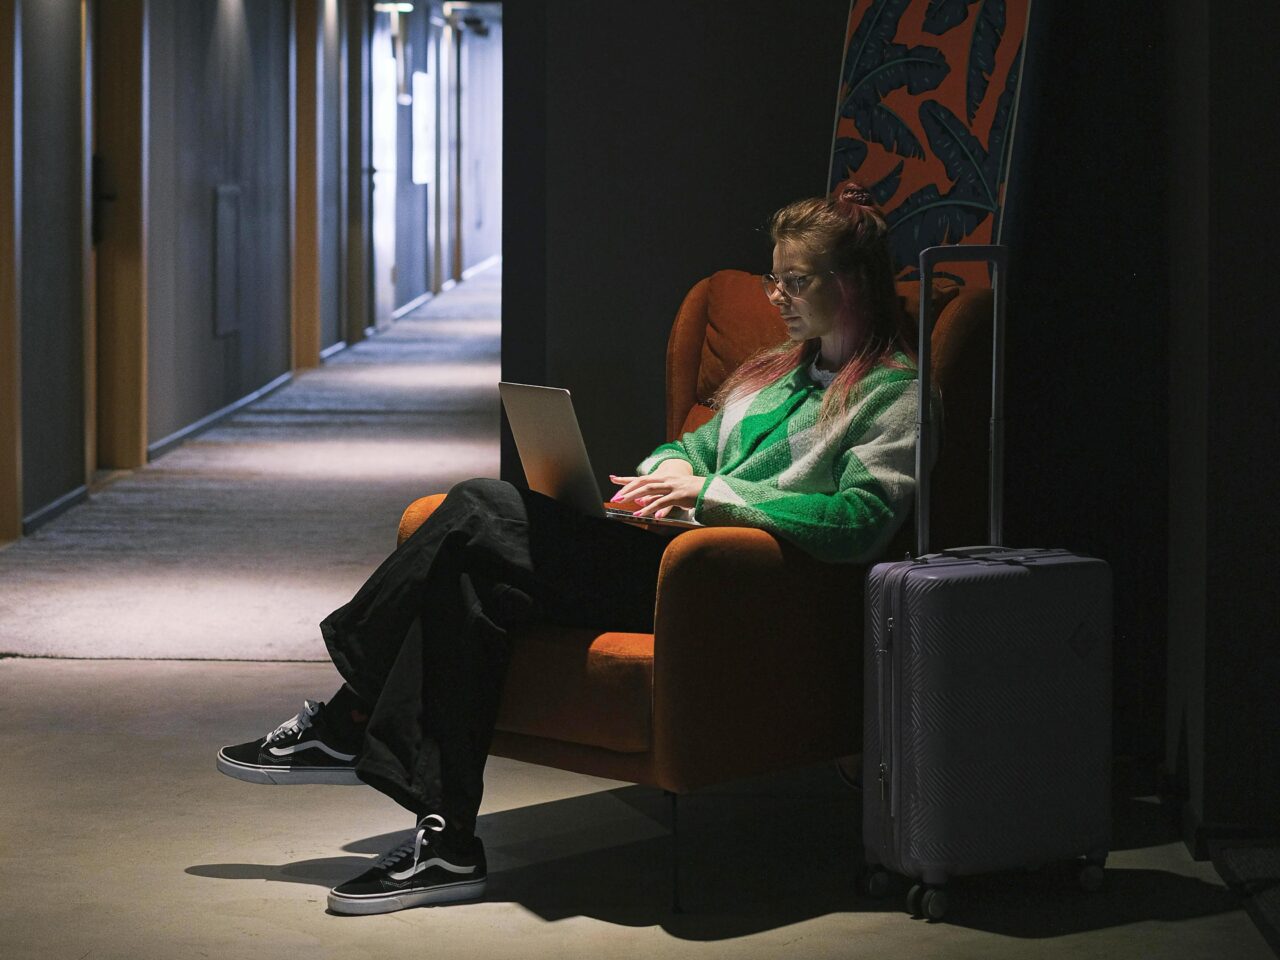 Kobieta w czerwonym fotelu pracuje na laptopie w ciemnym hotelowym korytarzu, obok niej stoi walizka na kółkach.